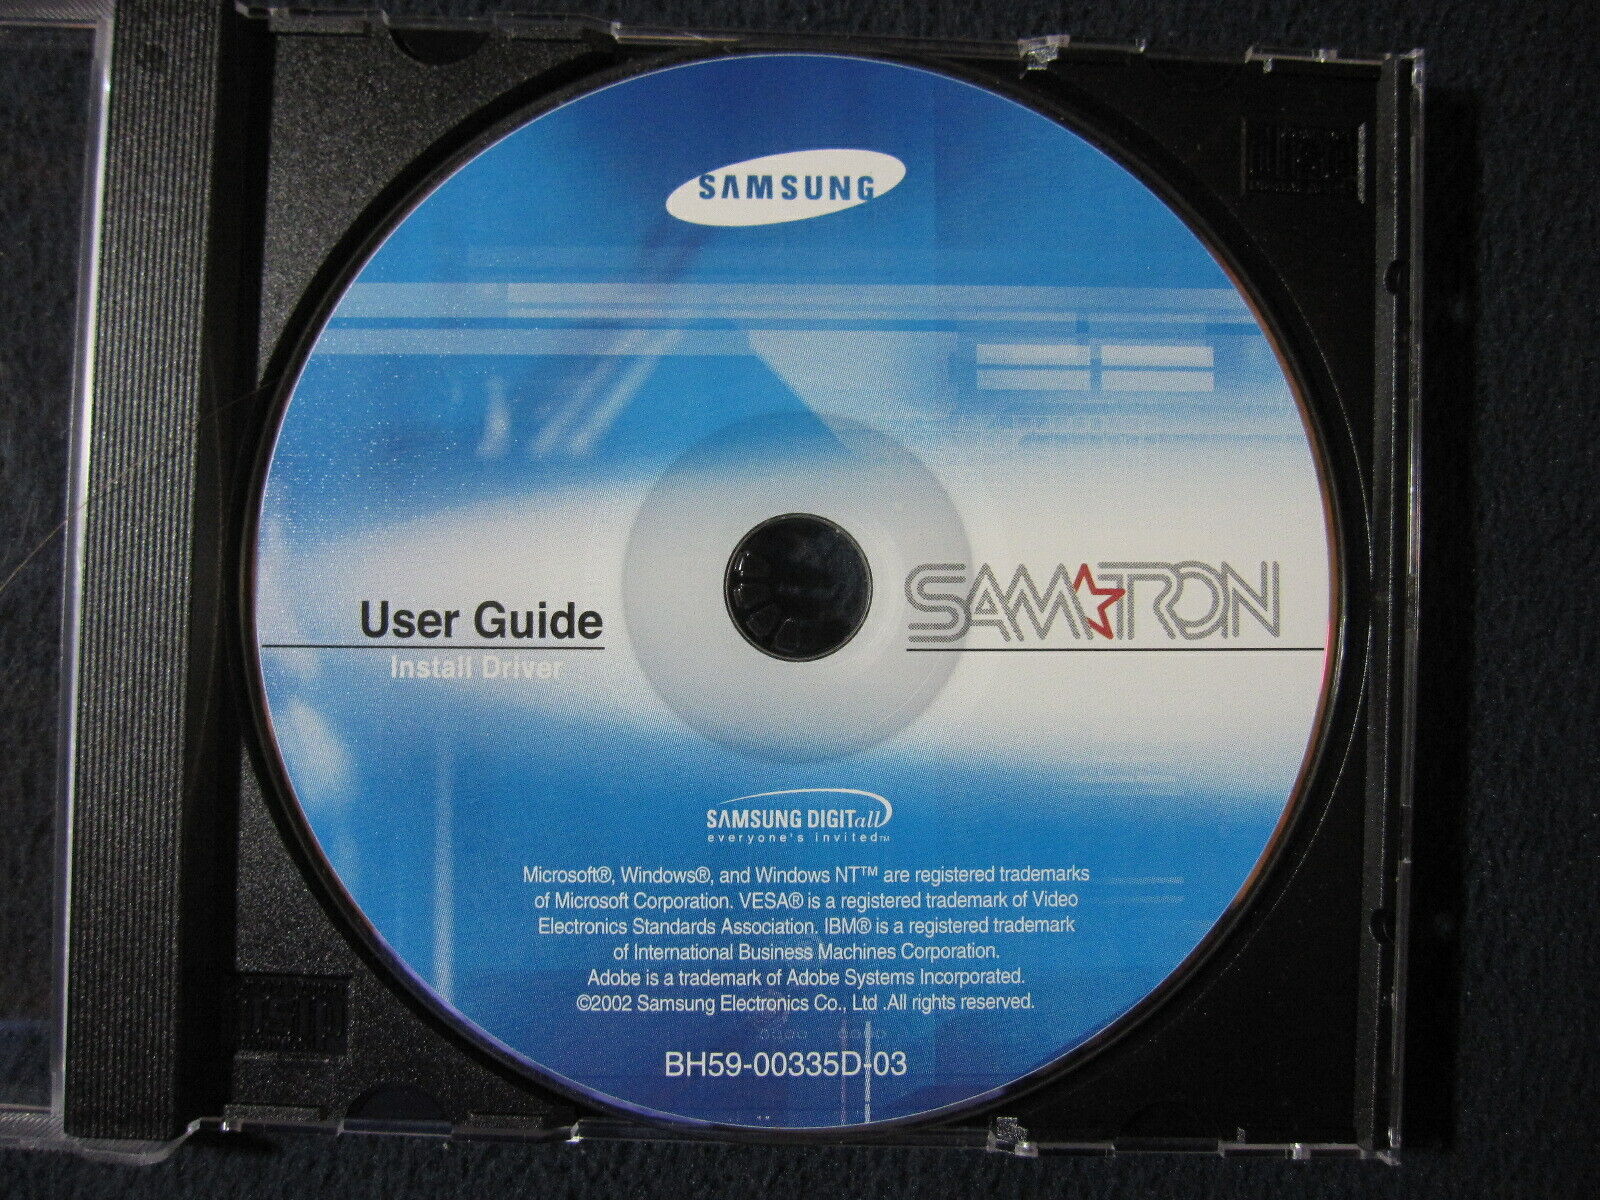 Samtron Monitor 76E/76V/77V User Guide Install Driver [CD-ROM] Samsung 2002